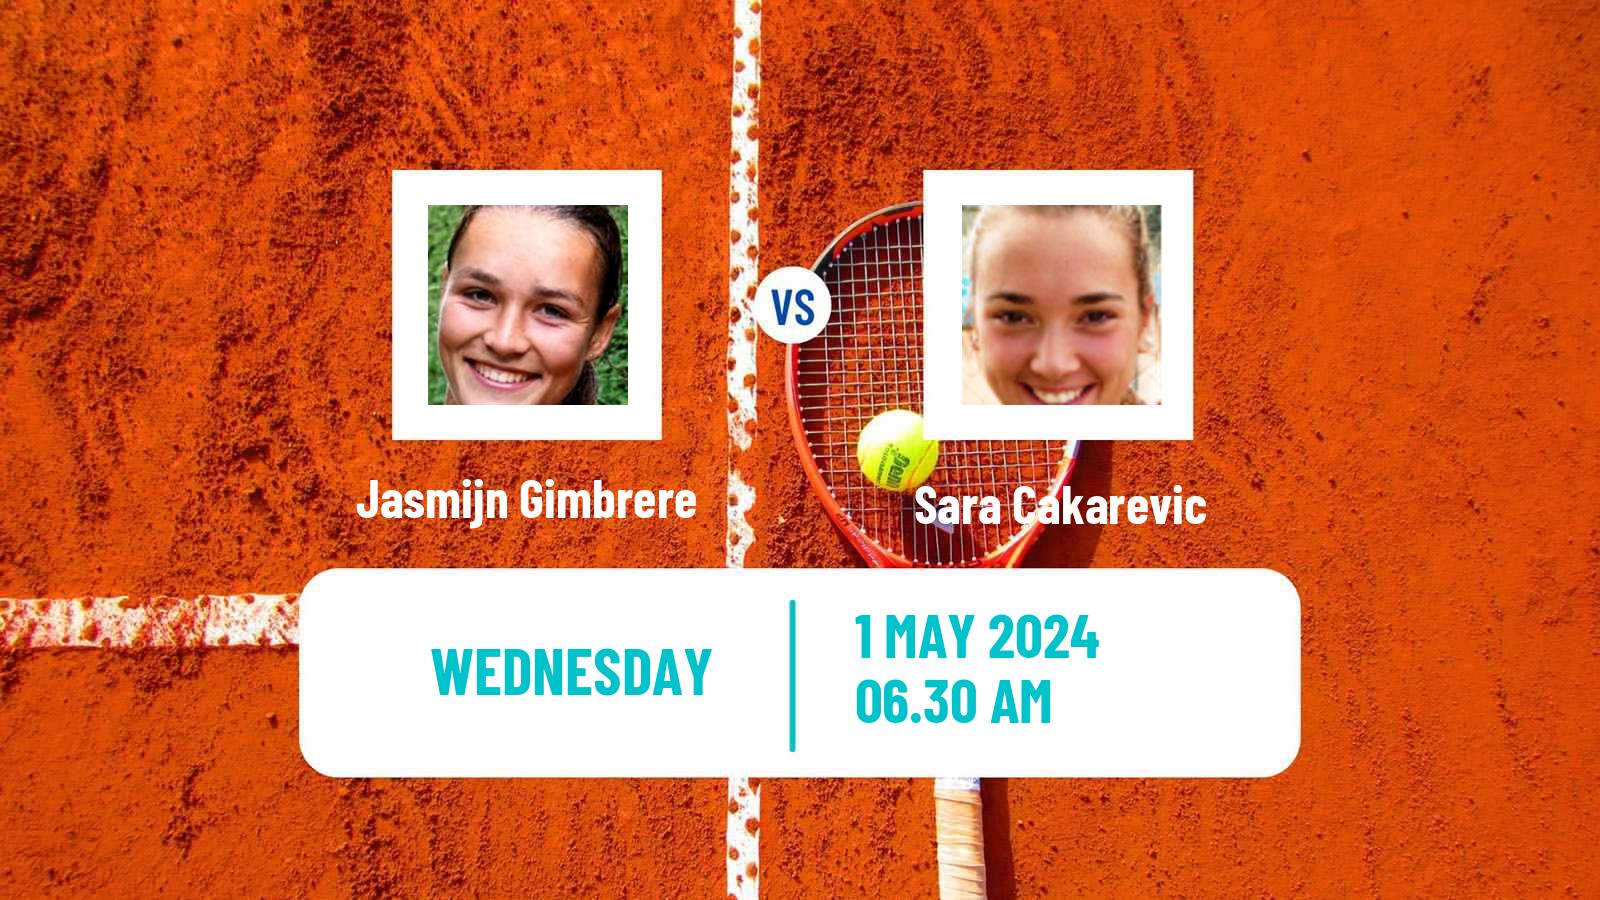 Tennis ITF W35 Hammamet 7 Women Jasmijn Gimbrere - Sara Cakarevic